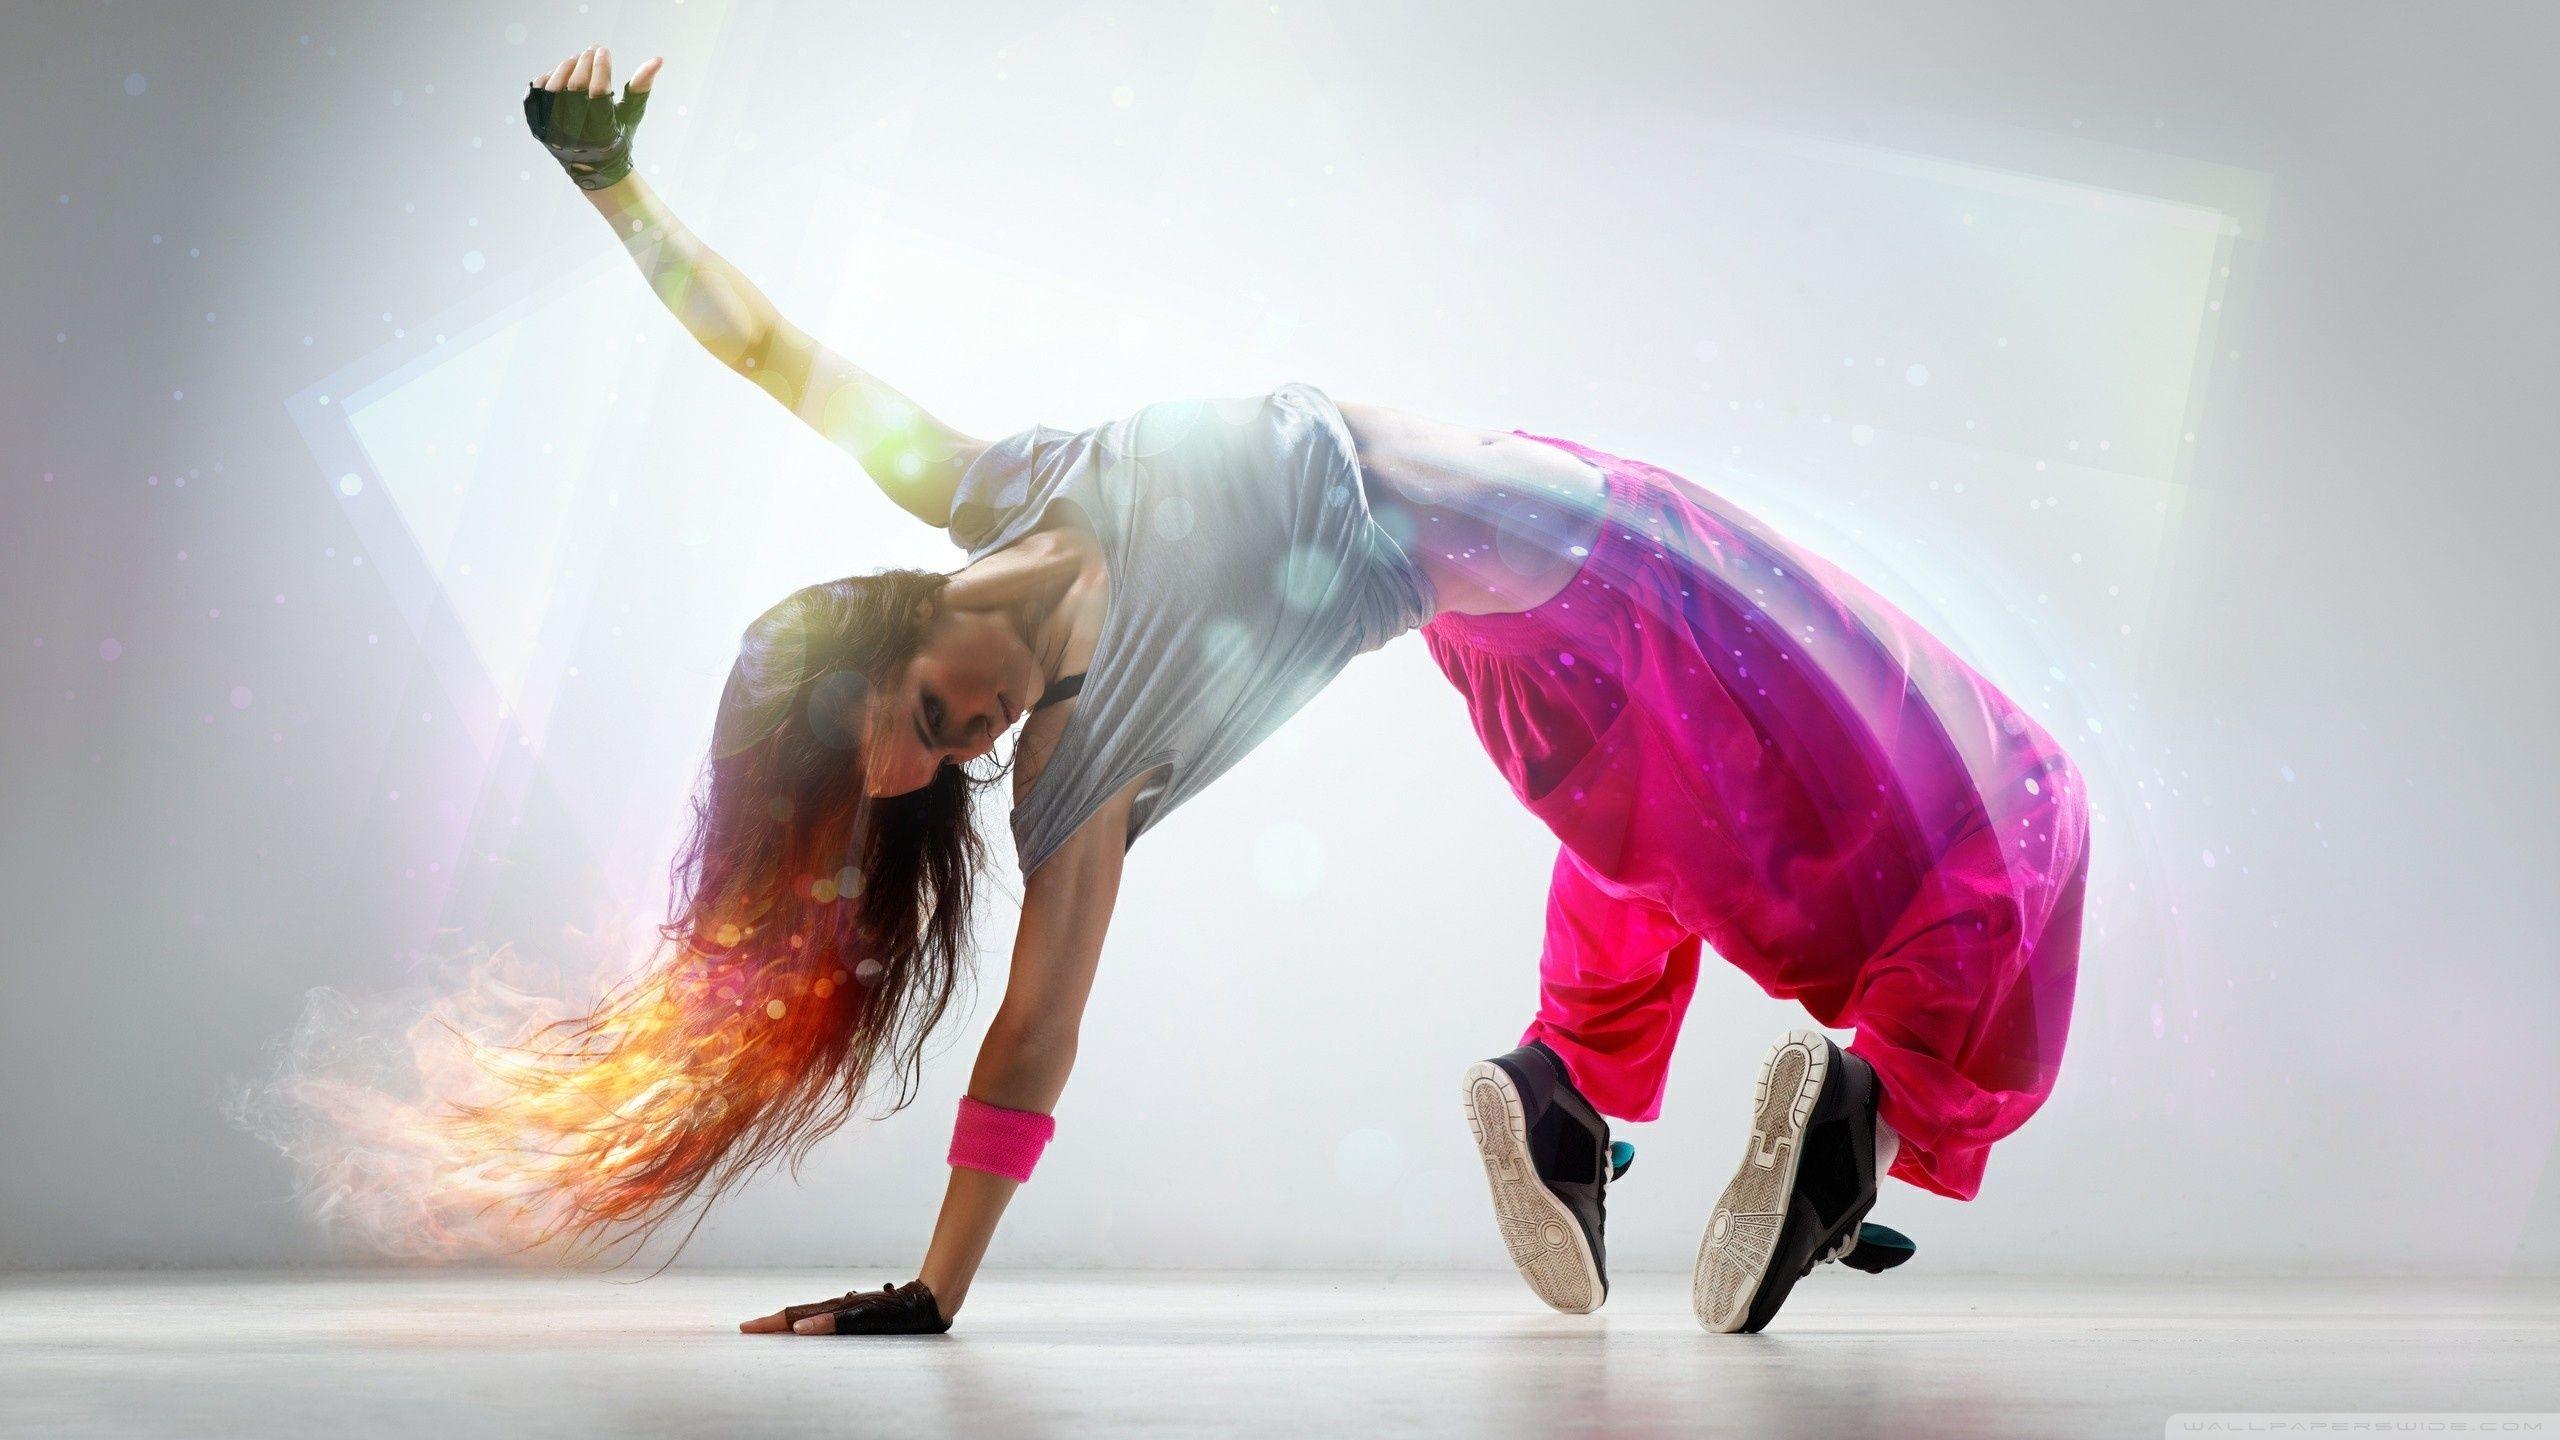 Breakdance Girl ❤ 4K HD Desktop Wallpaper for 4K Ultra HD TV